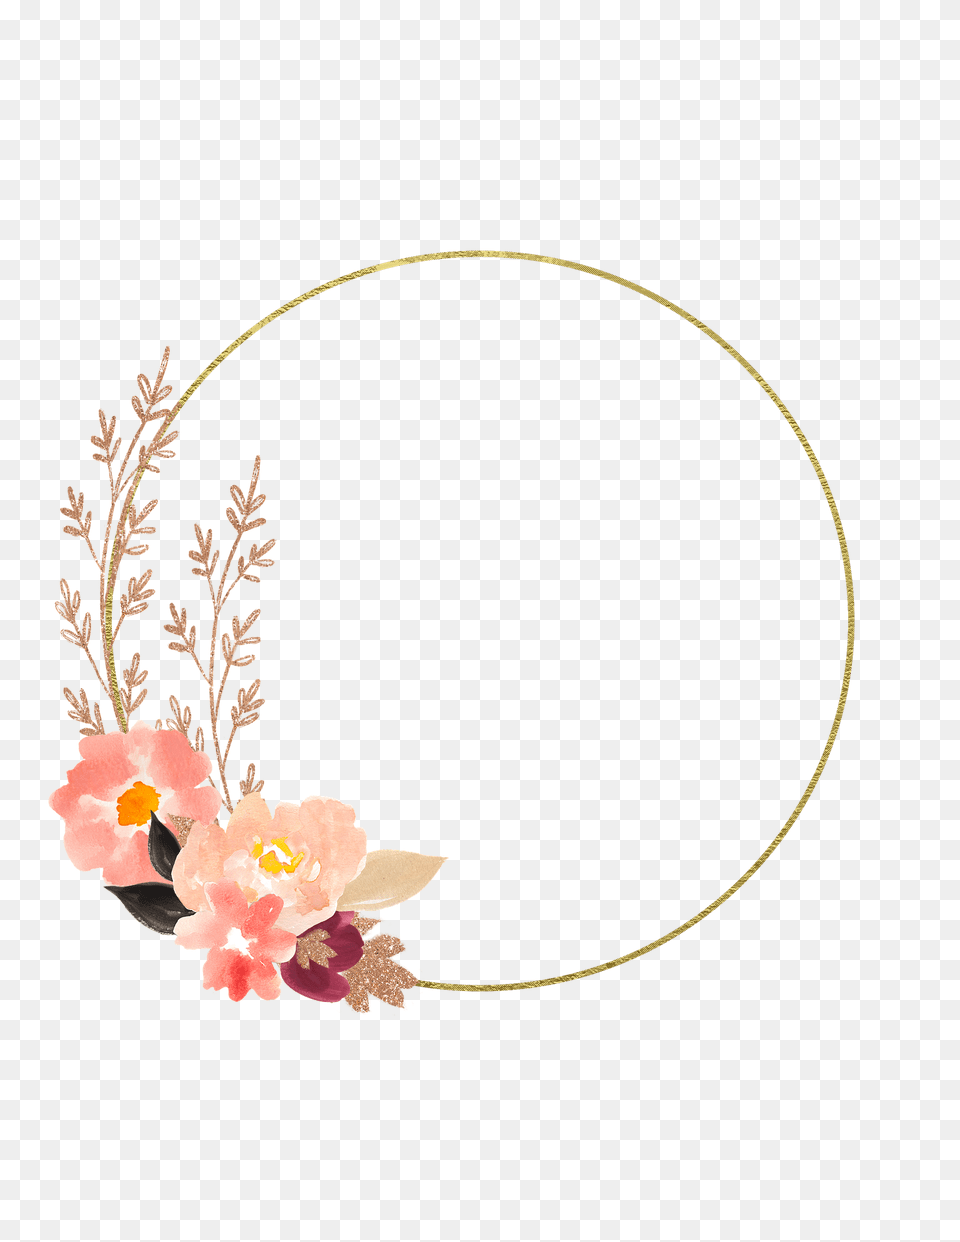 Watercolour Flowers Watercolor On Pixabay Transparent Watercolor Floral Circle, Plant, Flower, Flower Arrangement, Pattern Png Image